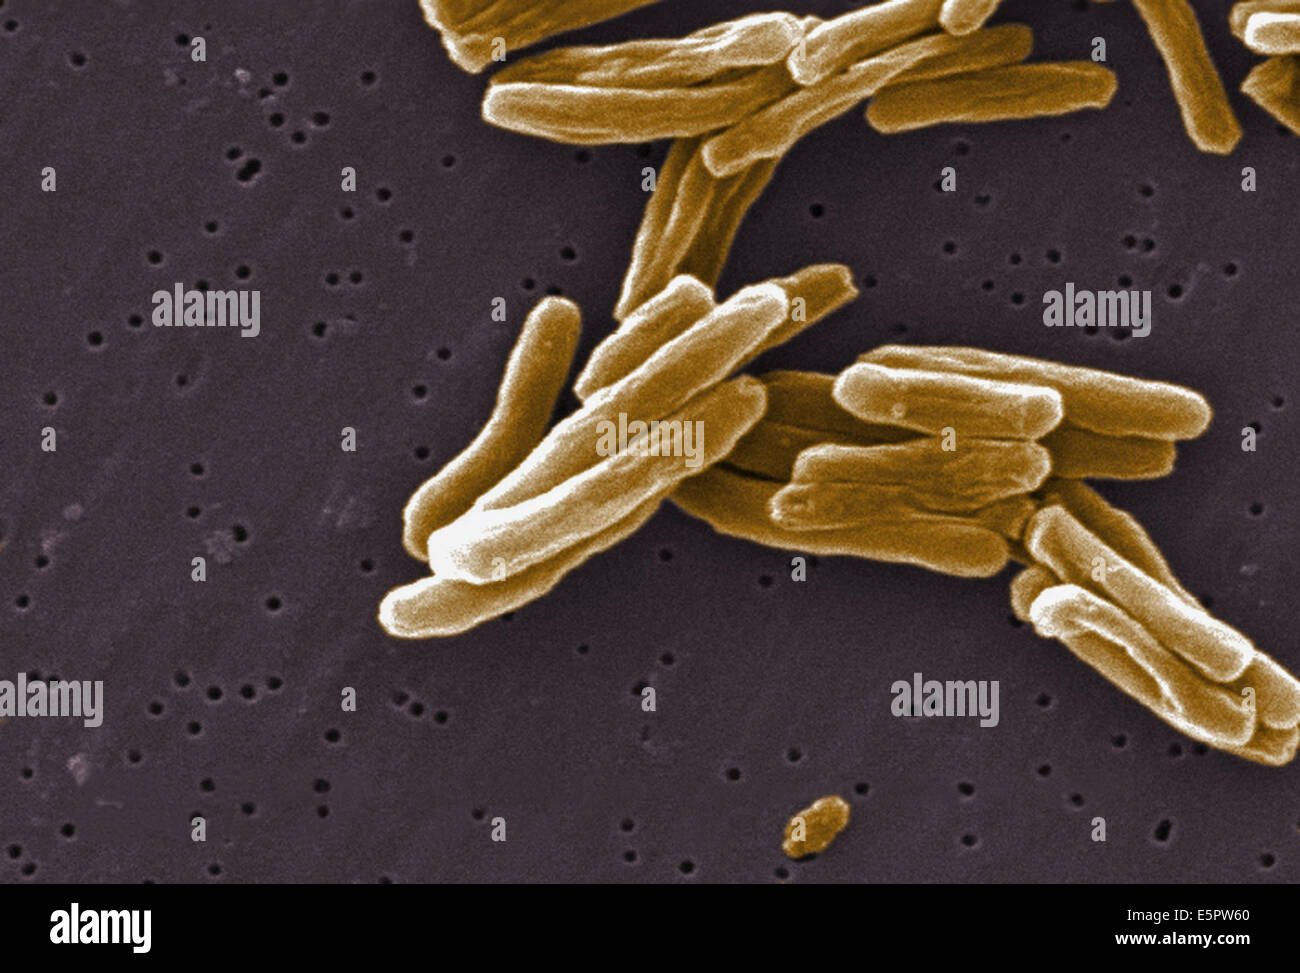 L'analyse des électrons Microphotographie (SEM) de bactéries Gram-positives bacilles Mycobacterium tuberculosis, l'agent causal de la tuberculose. Banque D'Images